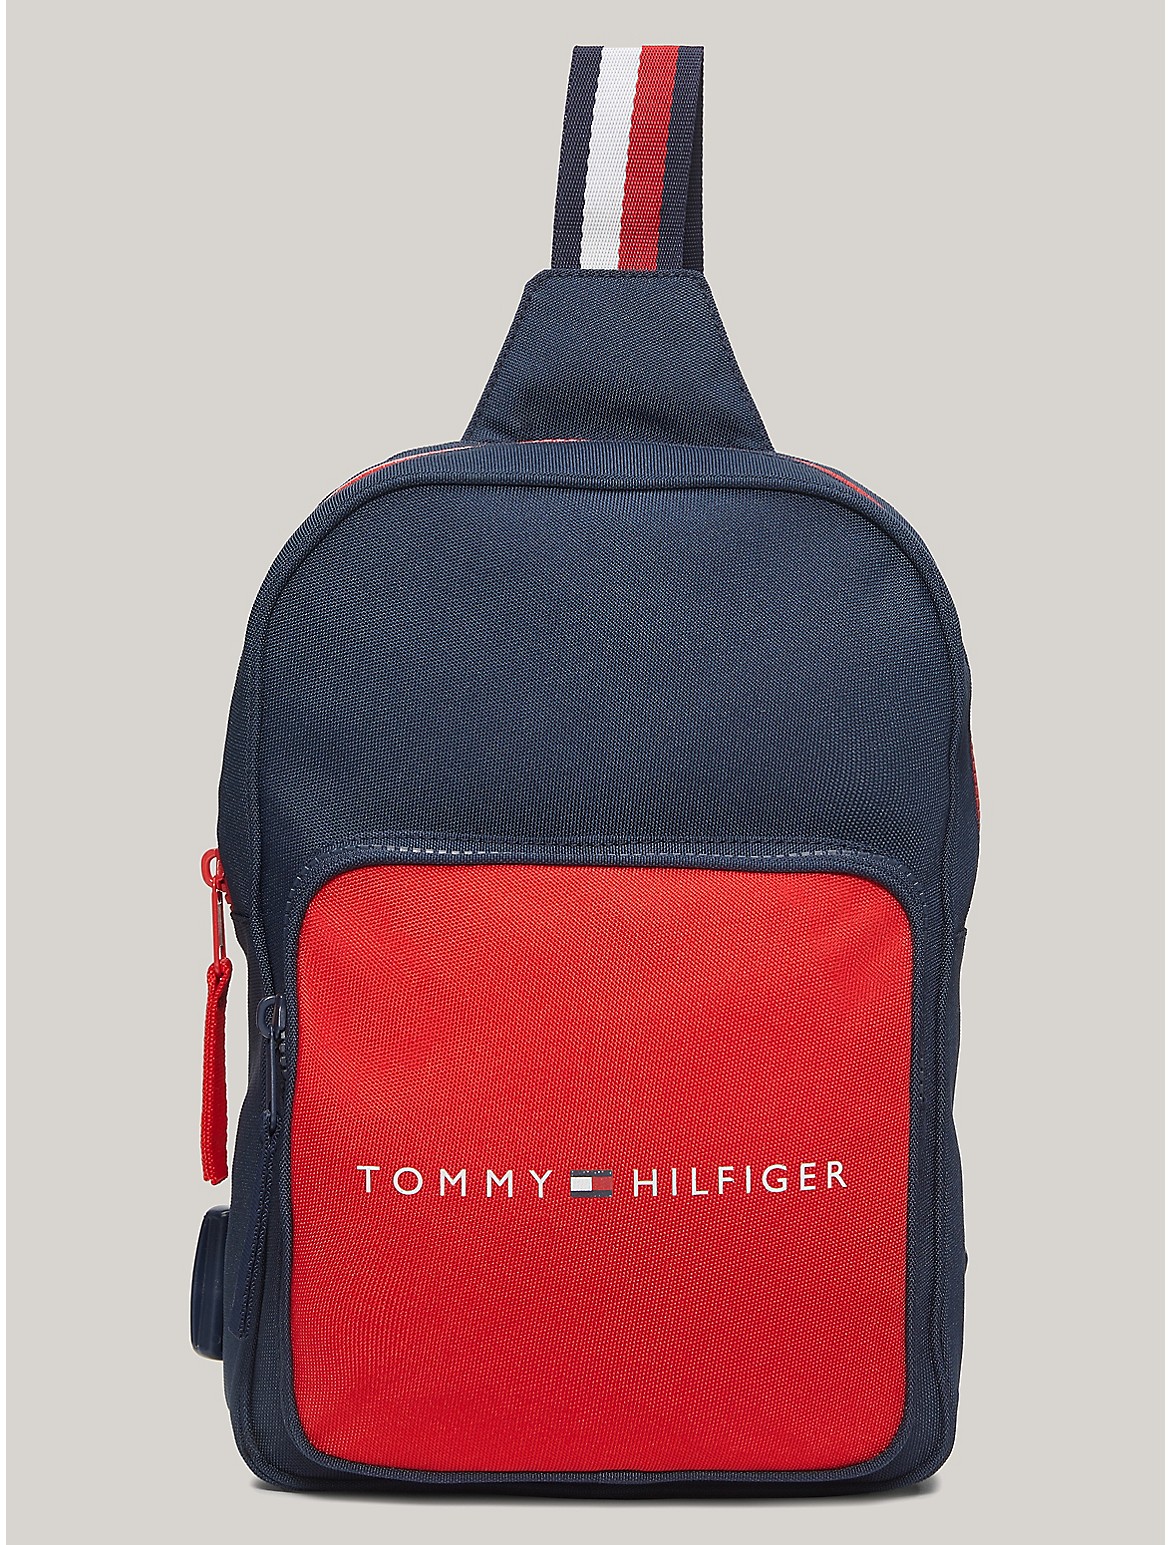 Tommy Hilfiger Boys' Kids' Logo Sling Backpack